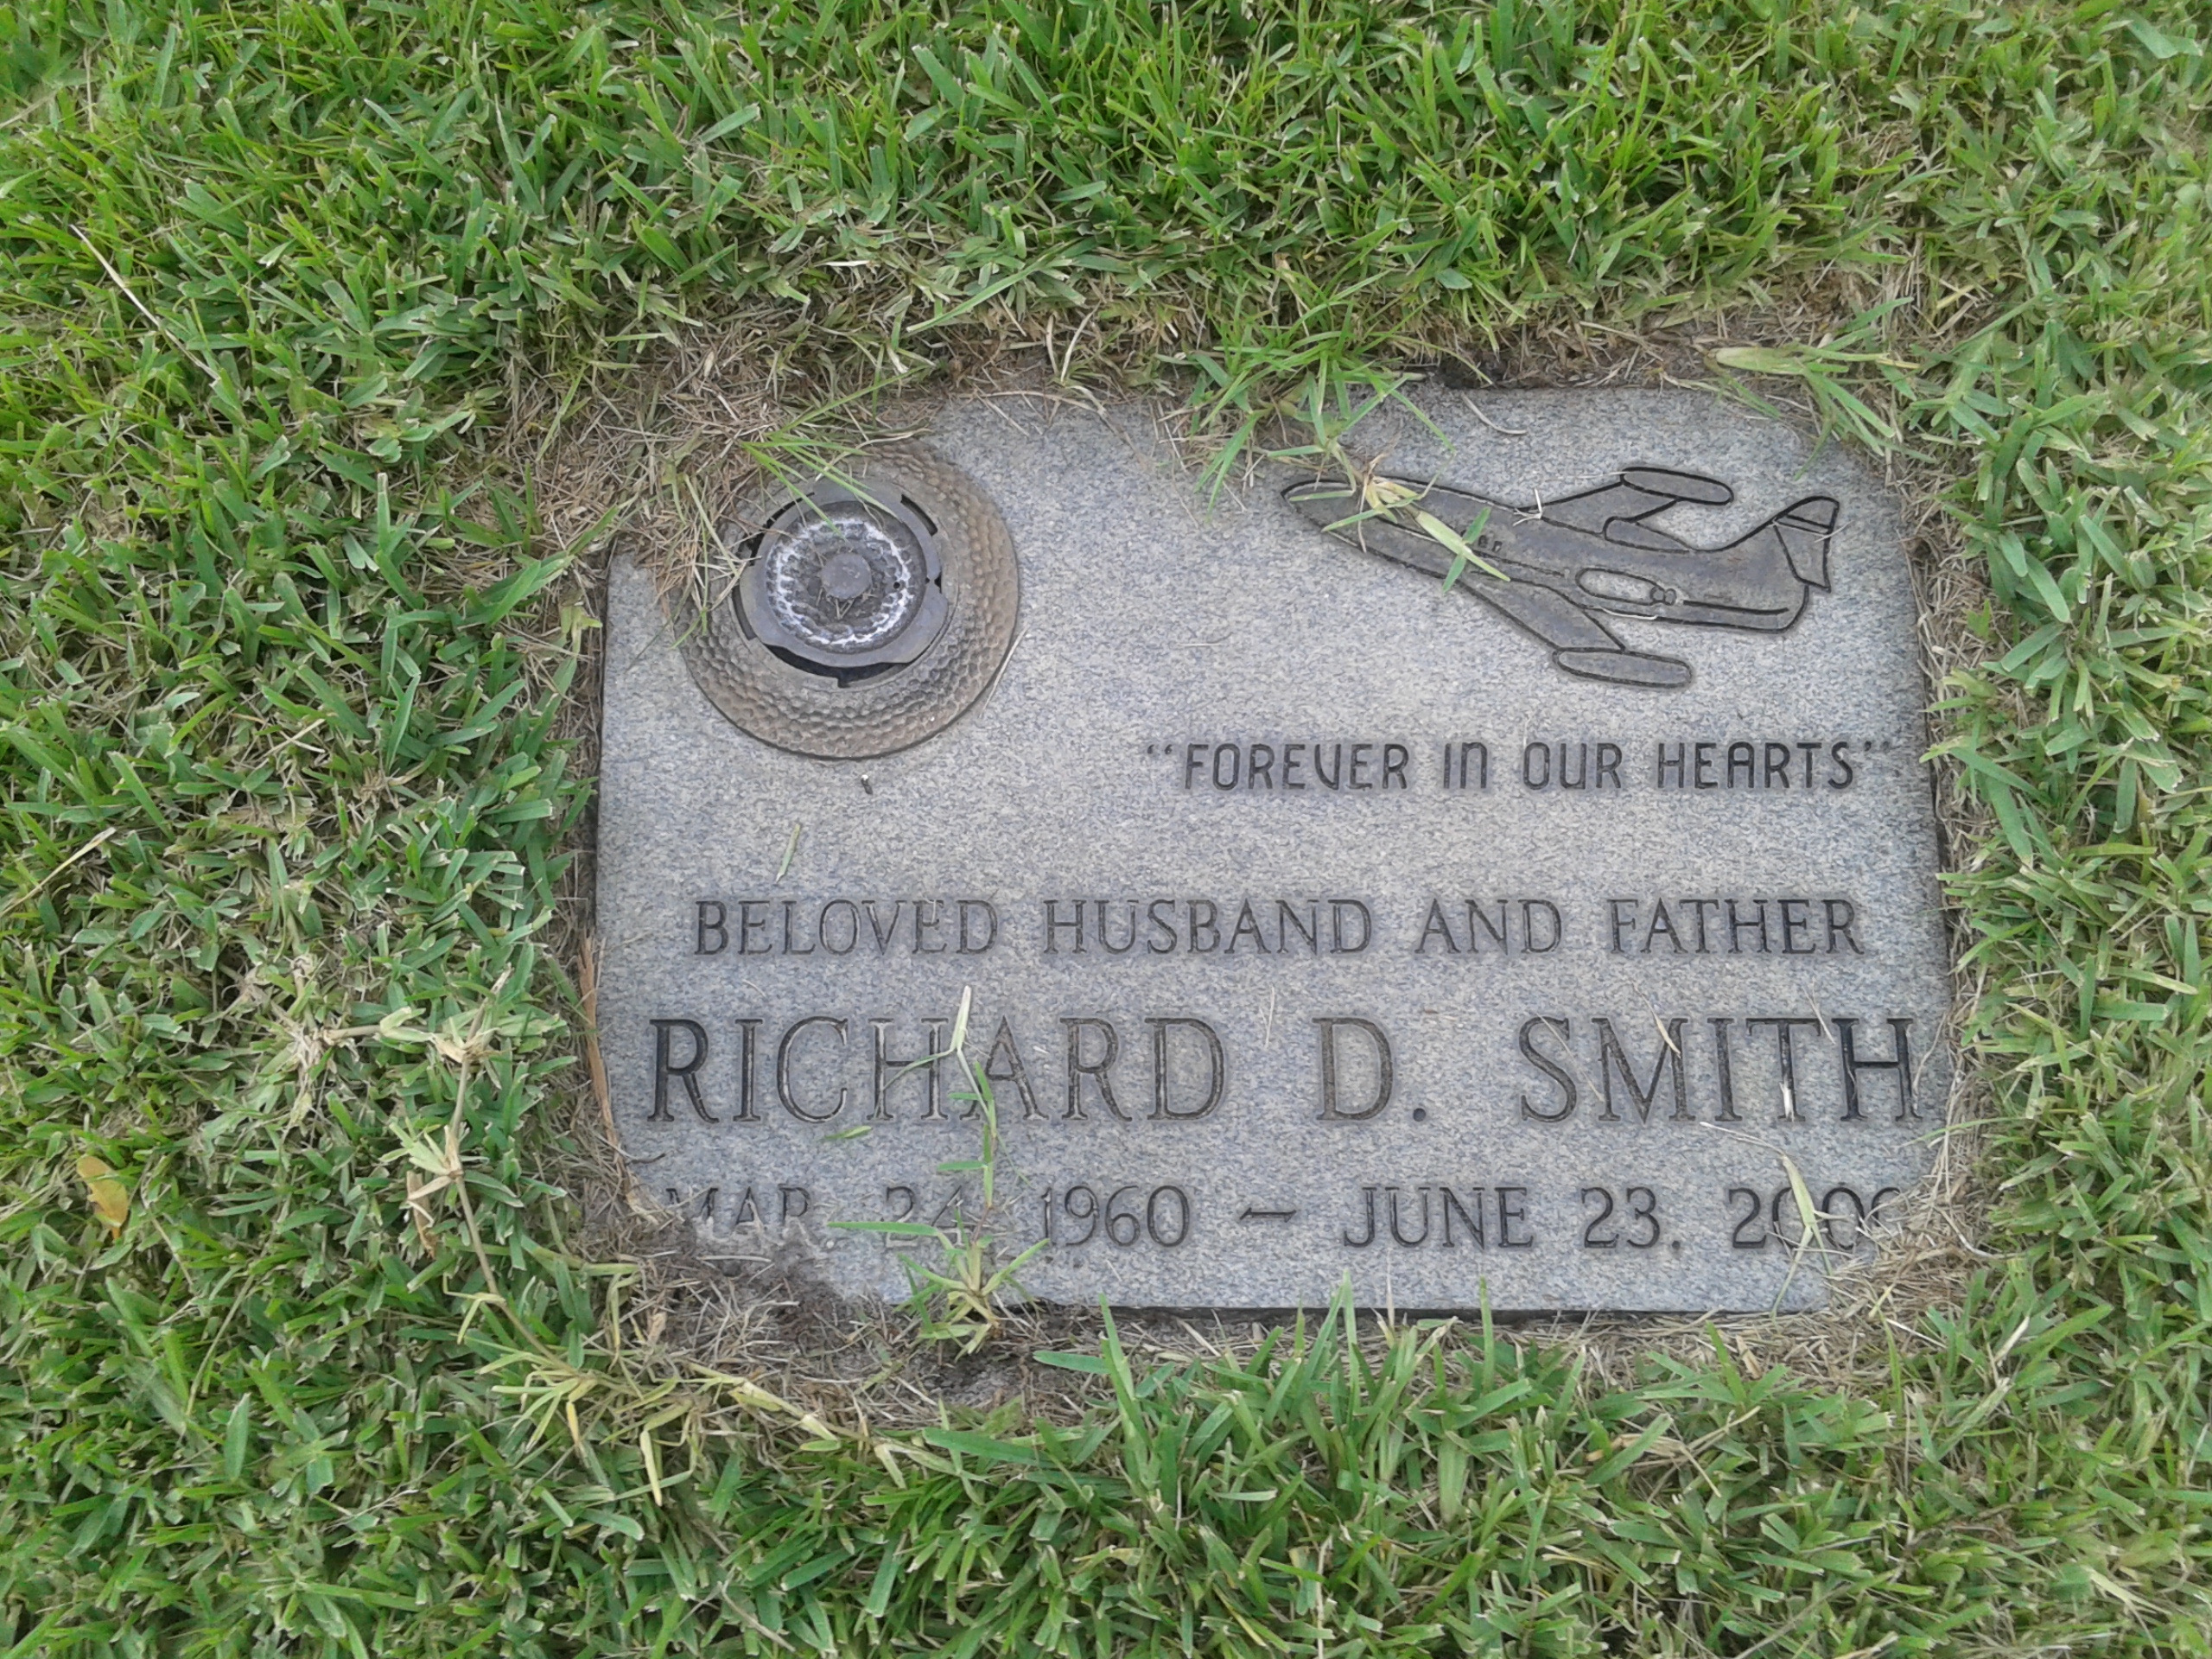 Richard D Smith